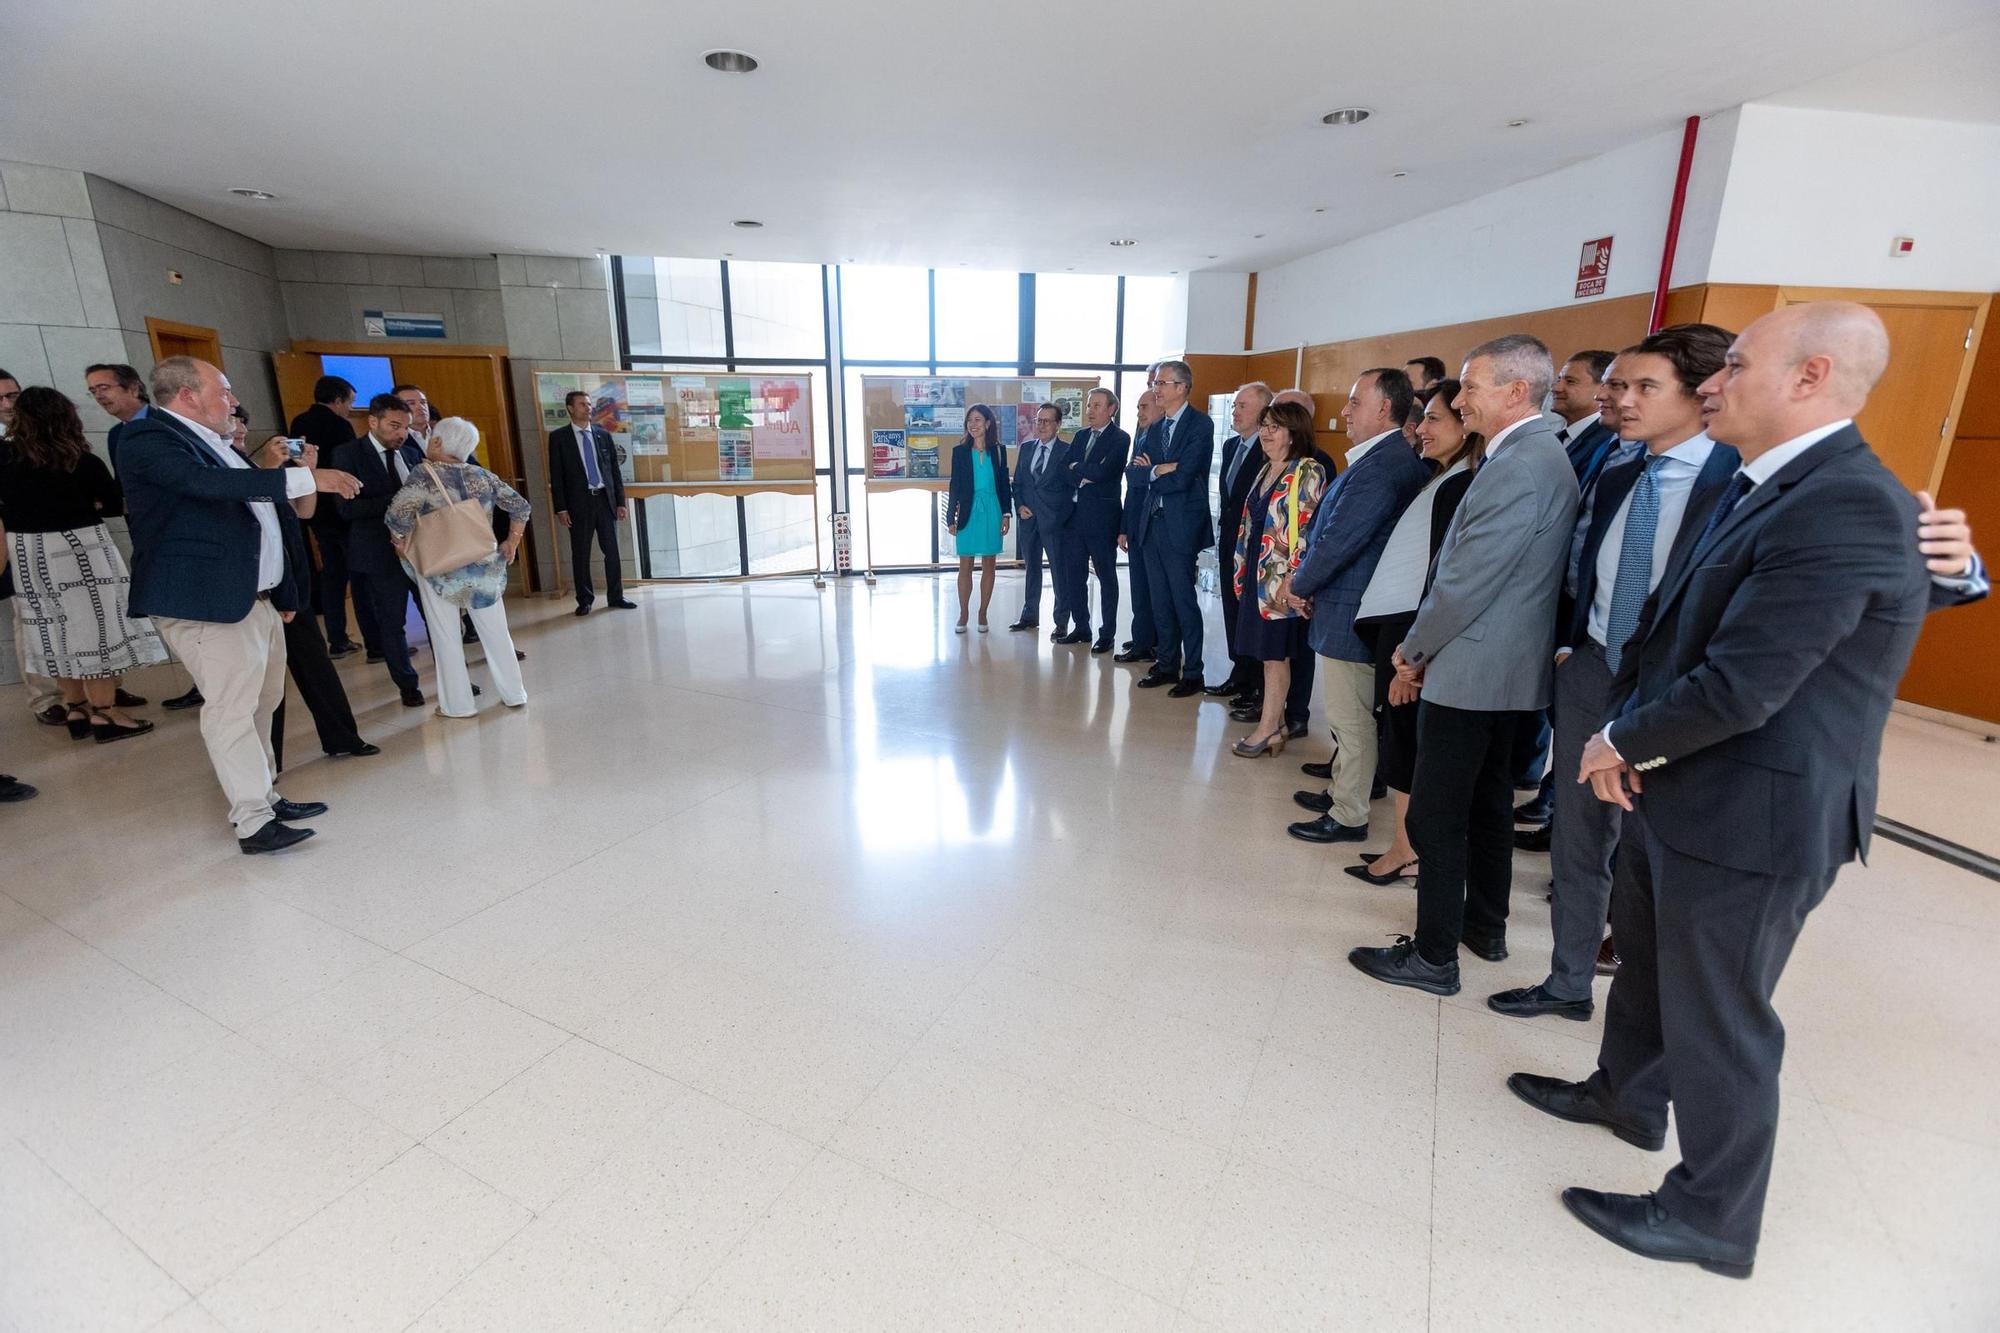 El gobernador del banco de España habla de nuevos ajustes en su visita a la Universidad de Alicante UA